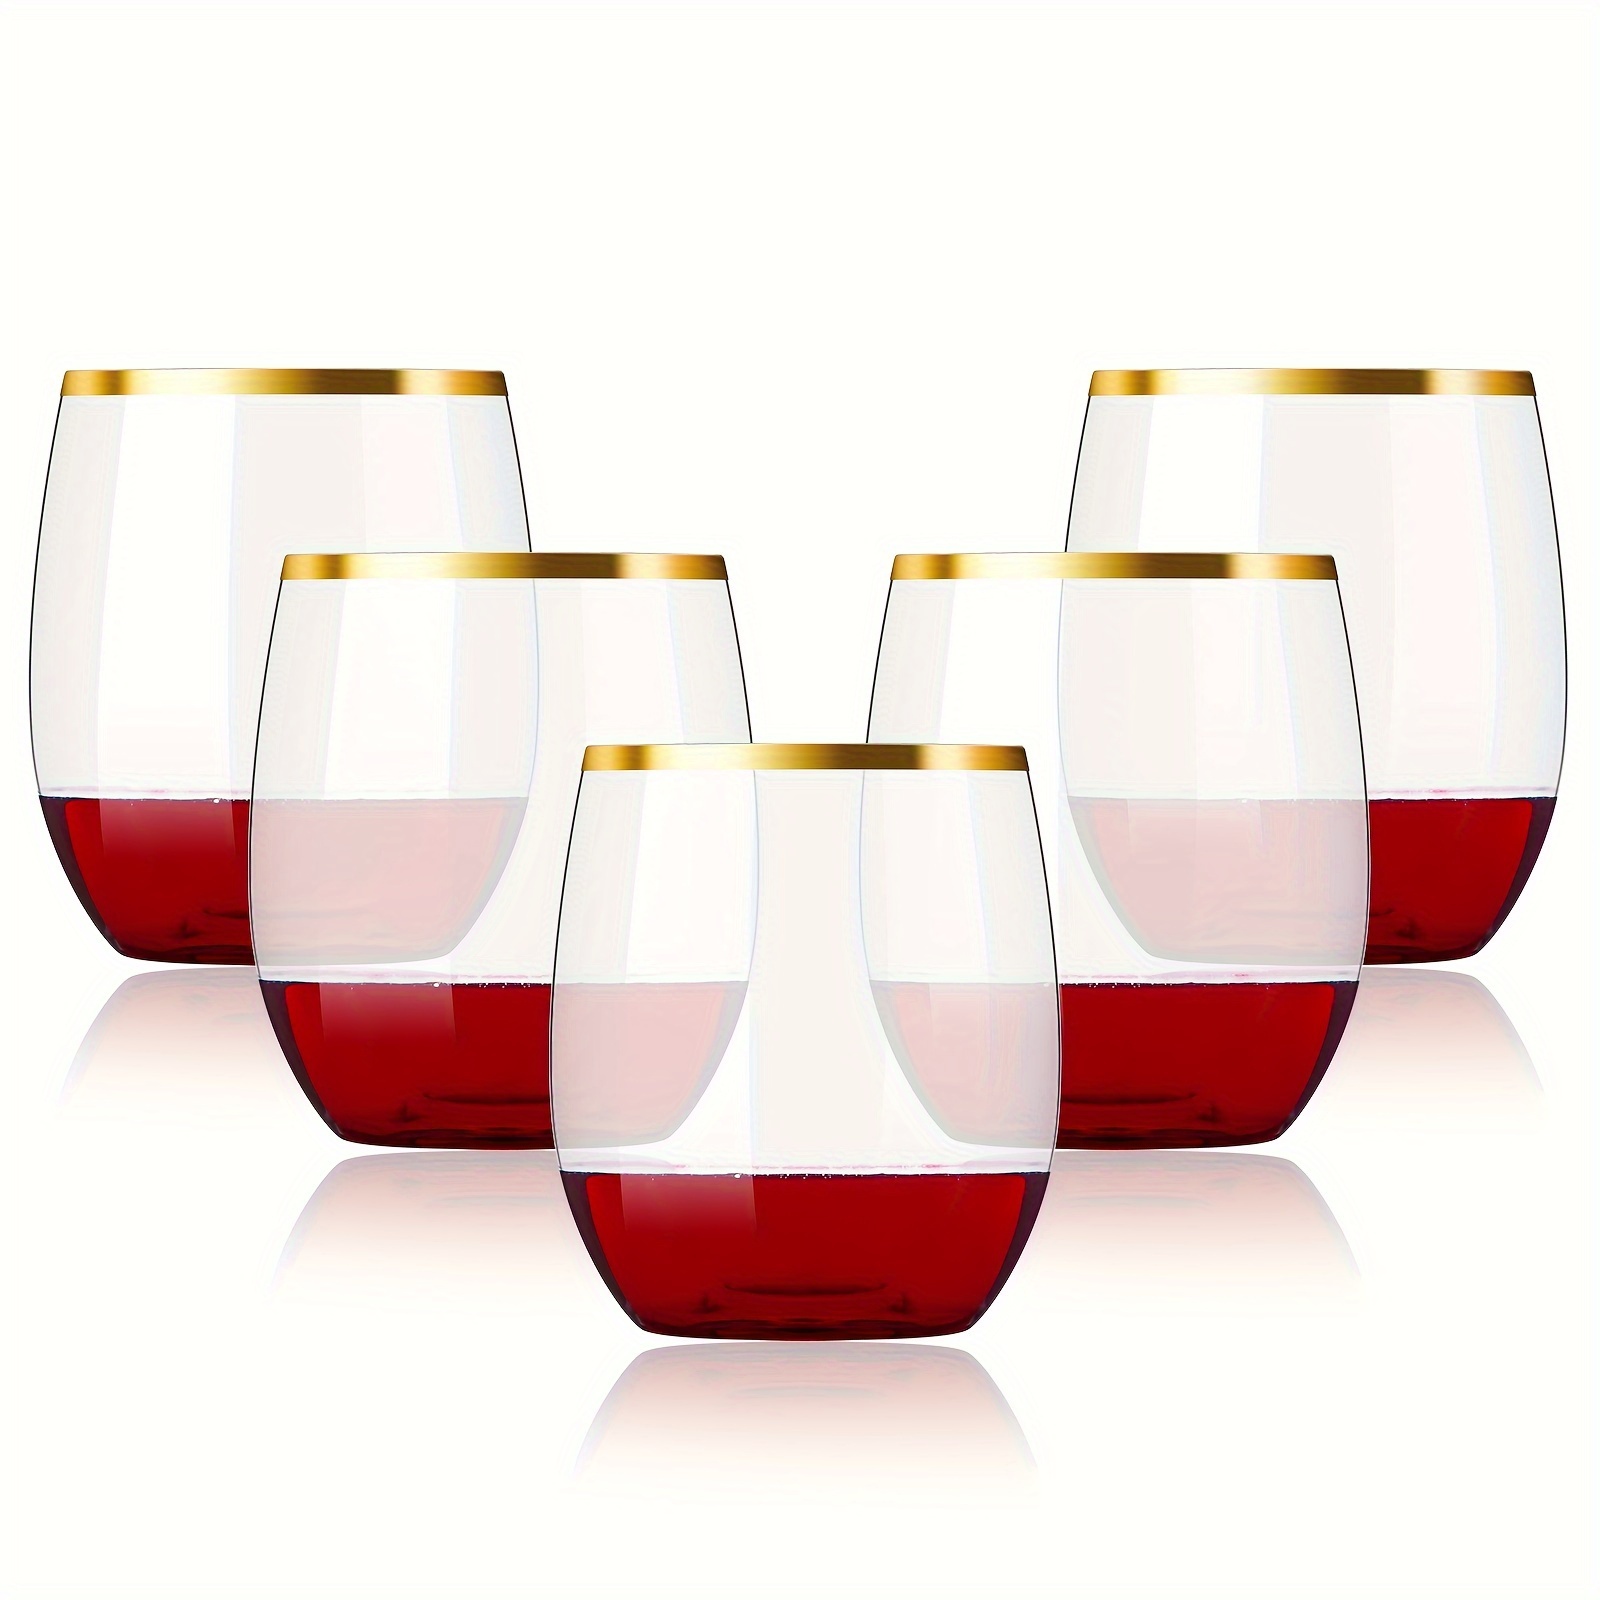 Compre Goblet Desmontable Reutilizable Copas De Vino De Plástico y